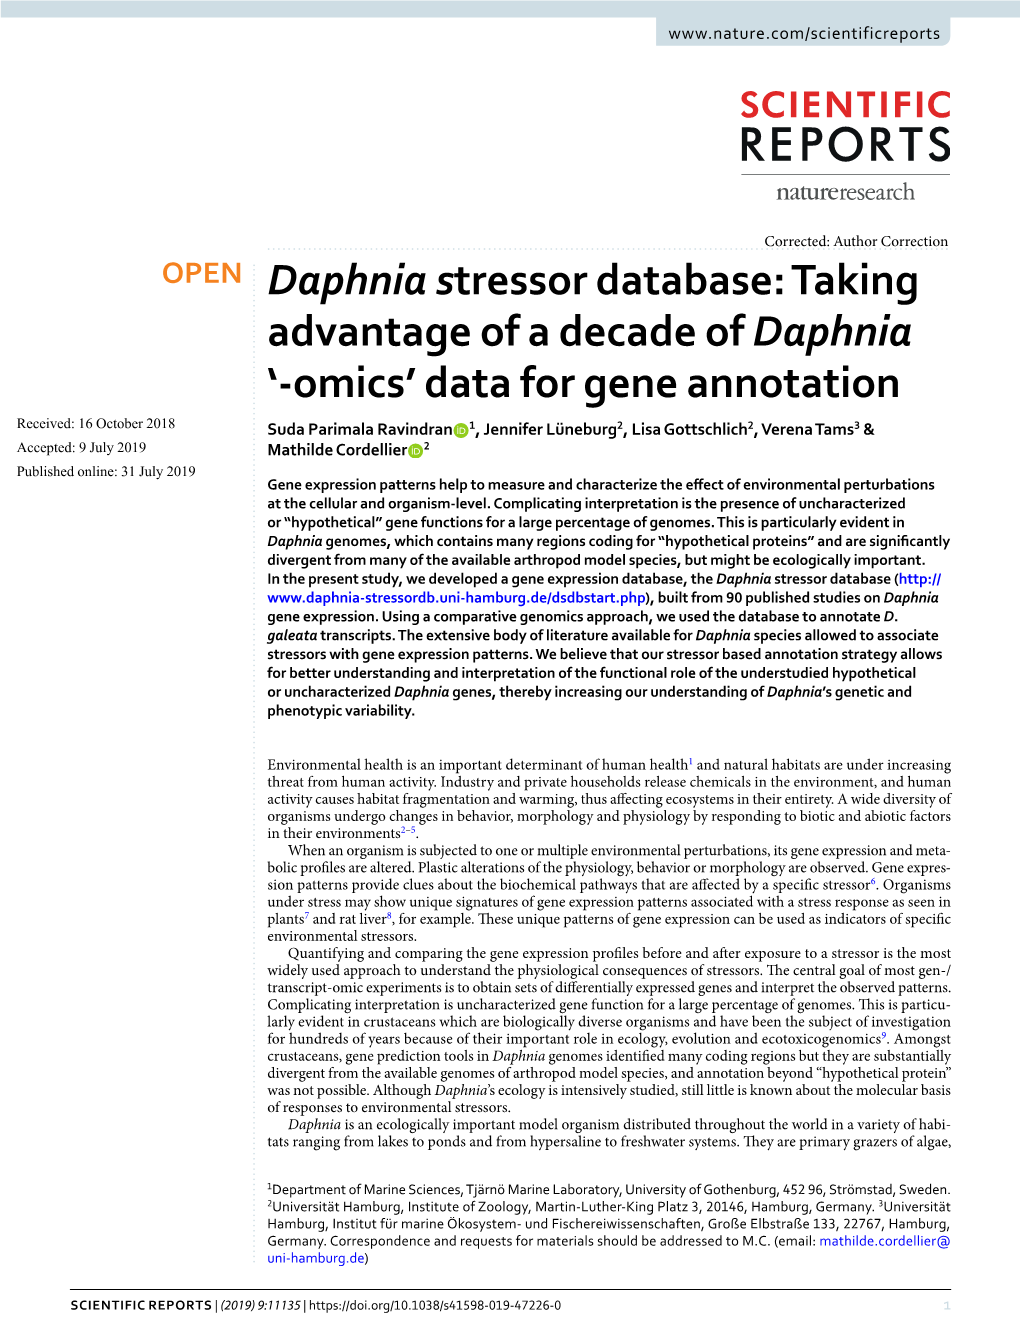 Daphnia Stressor Database